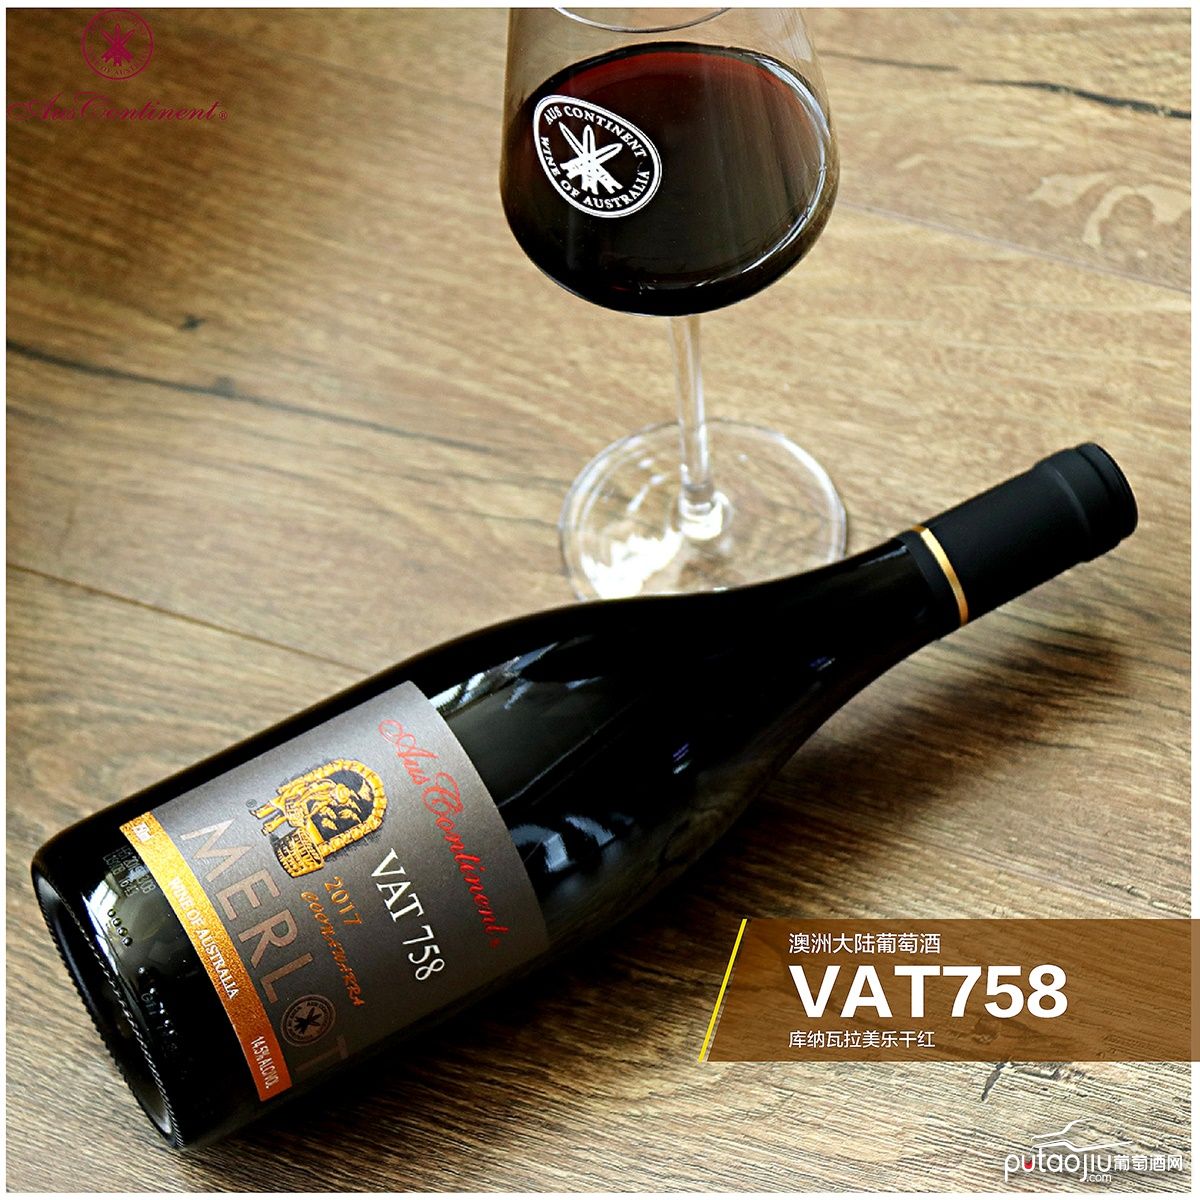 澳大利亚库纳瓦拉澳洲大陆酒庄美乐VAT 758干红葡萄酒红酒